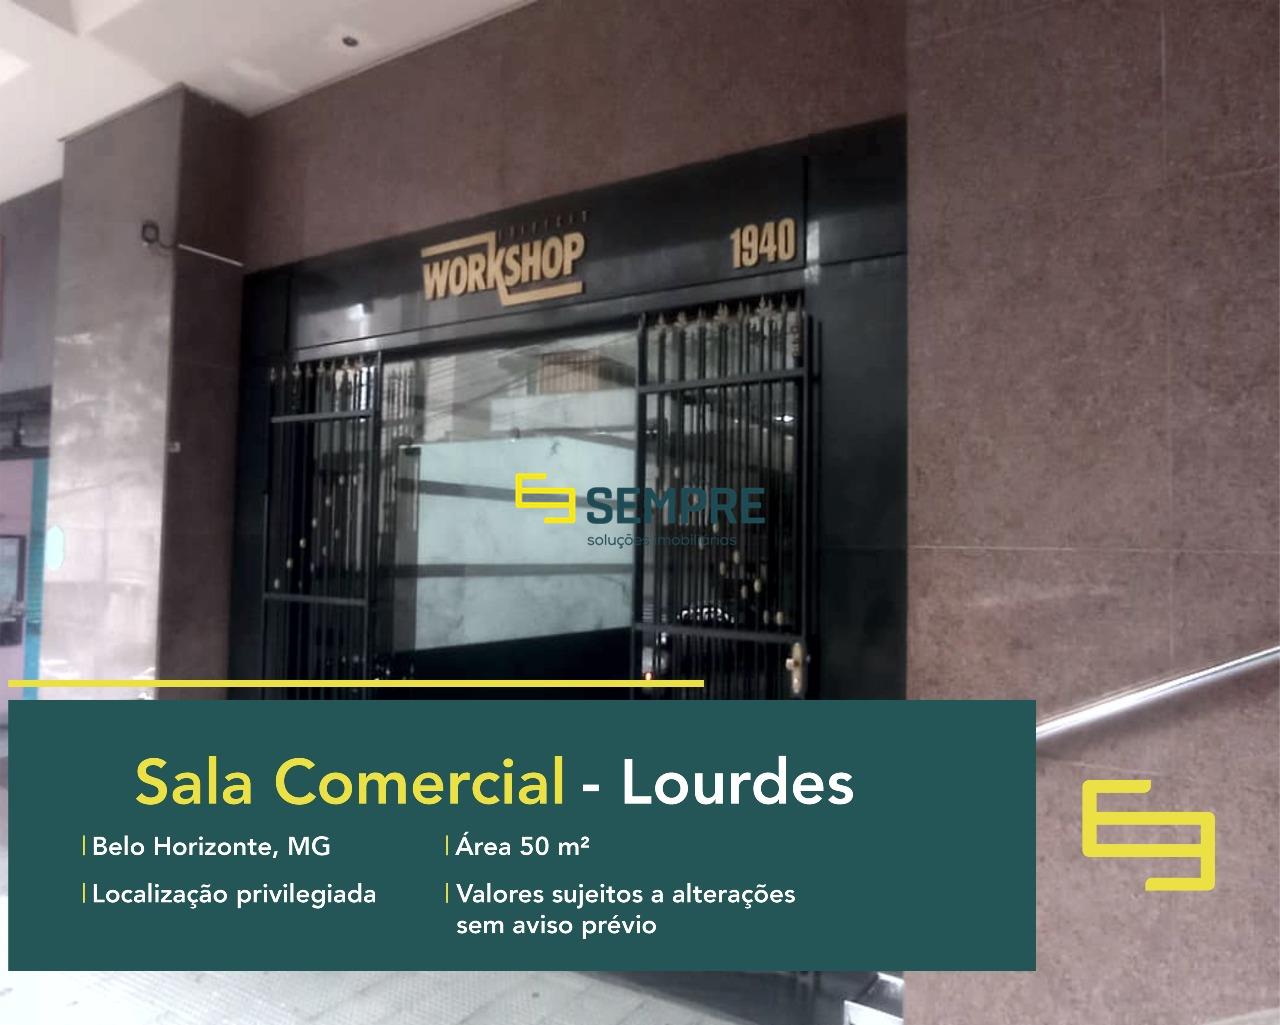 Aluguel de sala comercial no Lourdes em Belo Horizonte, em excelente localização. O estabelecimento comercial conta com área de 50 m².